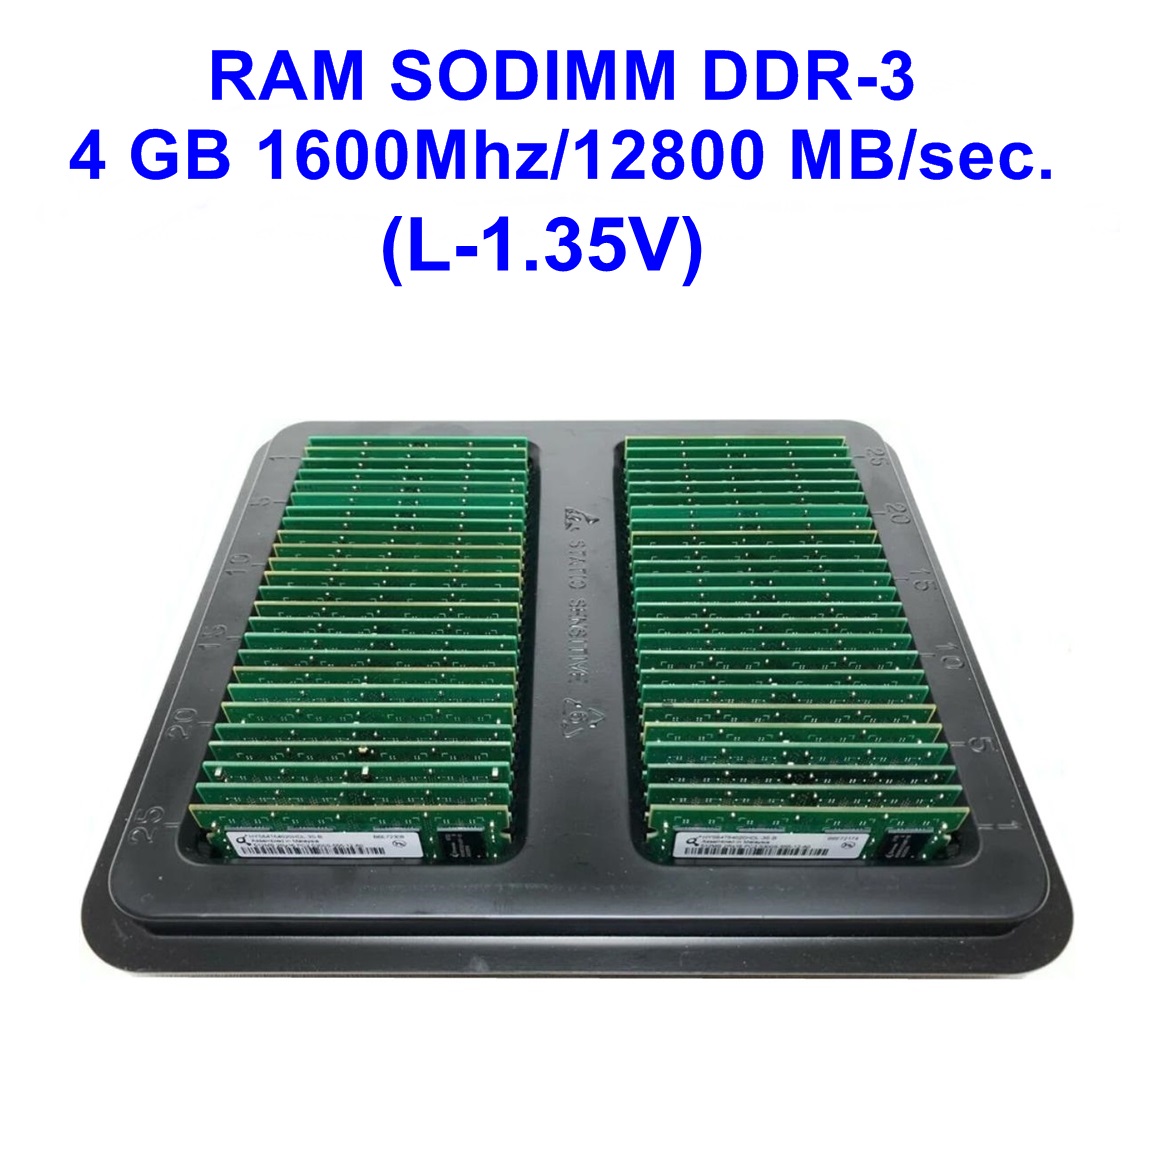 SODIMM DDR-3 4 GB 1600Mhz/12800 MB/sec.(L-1.35V)